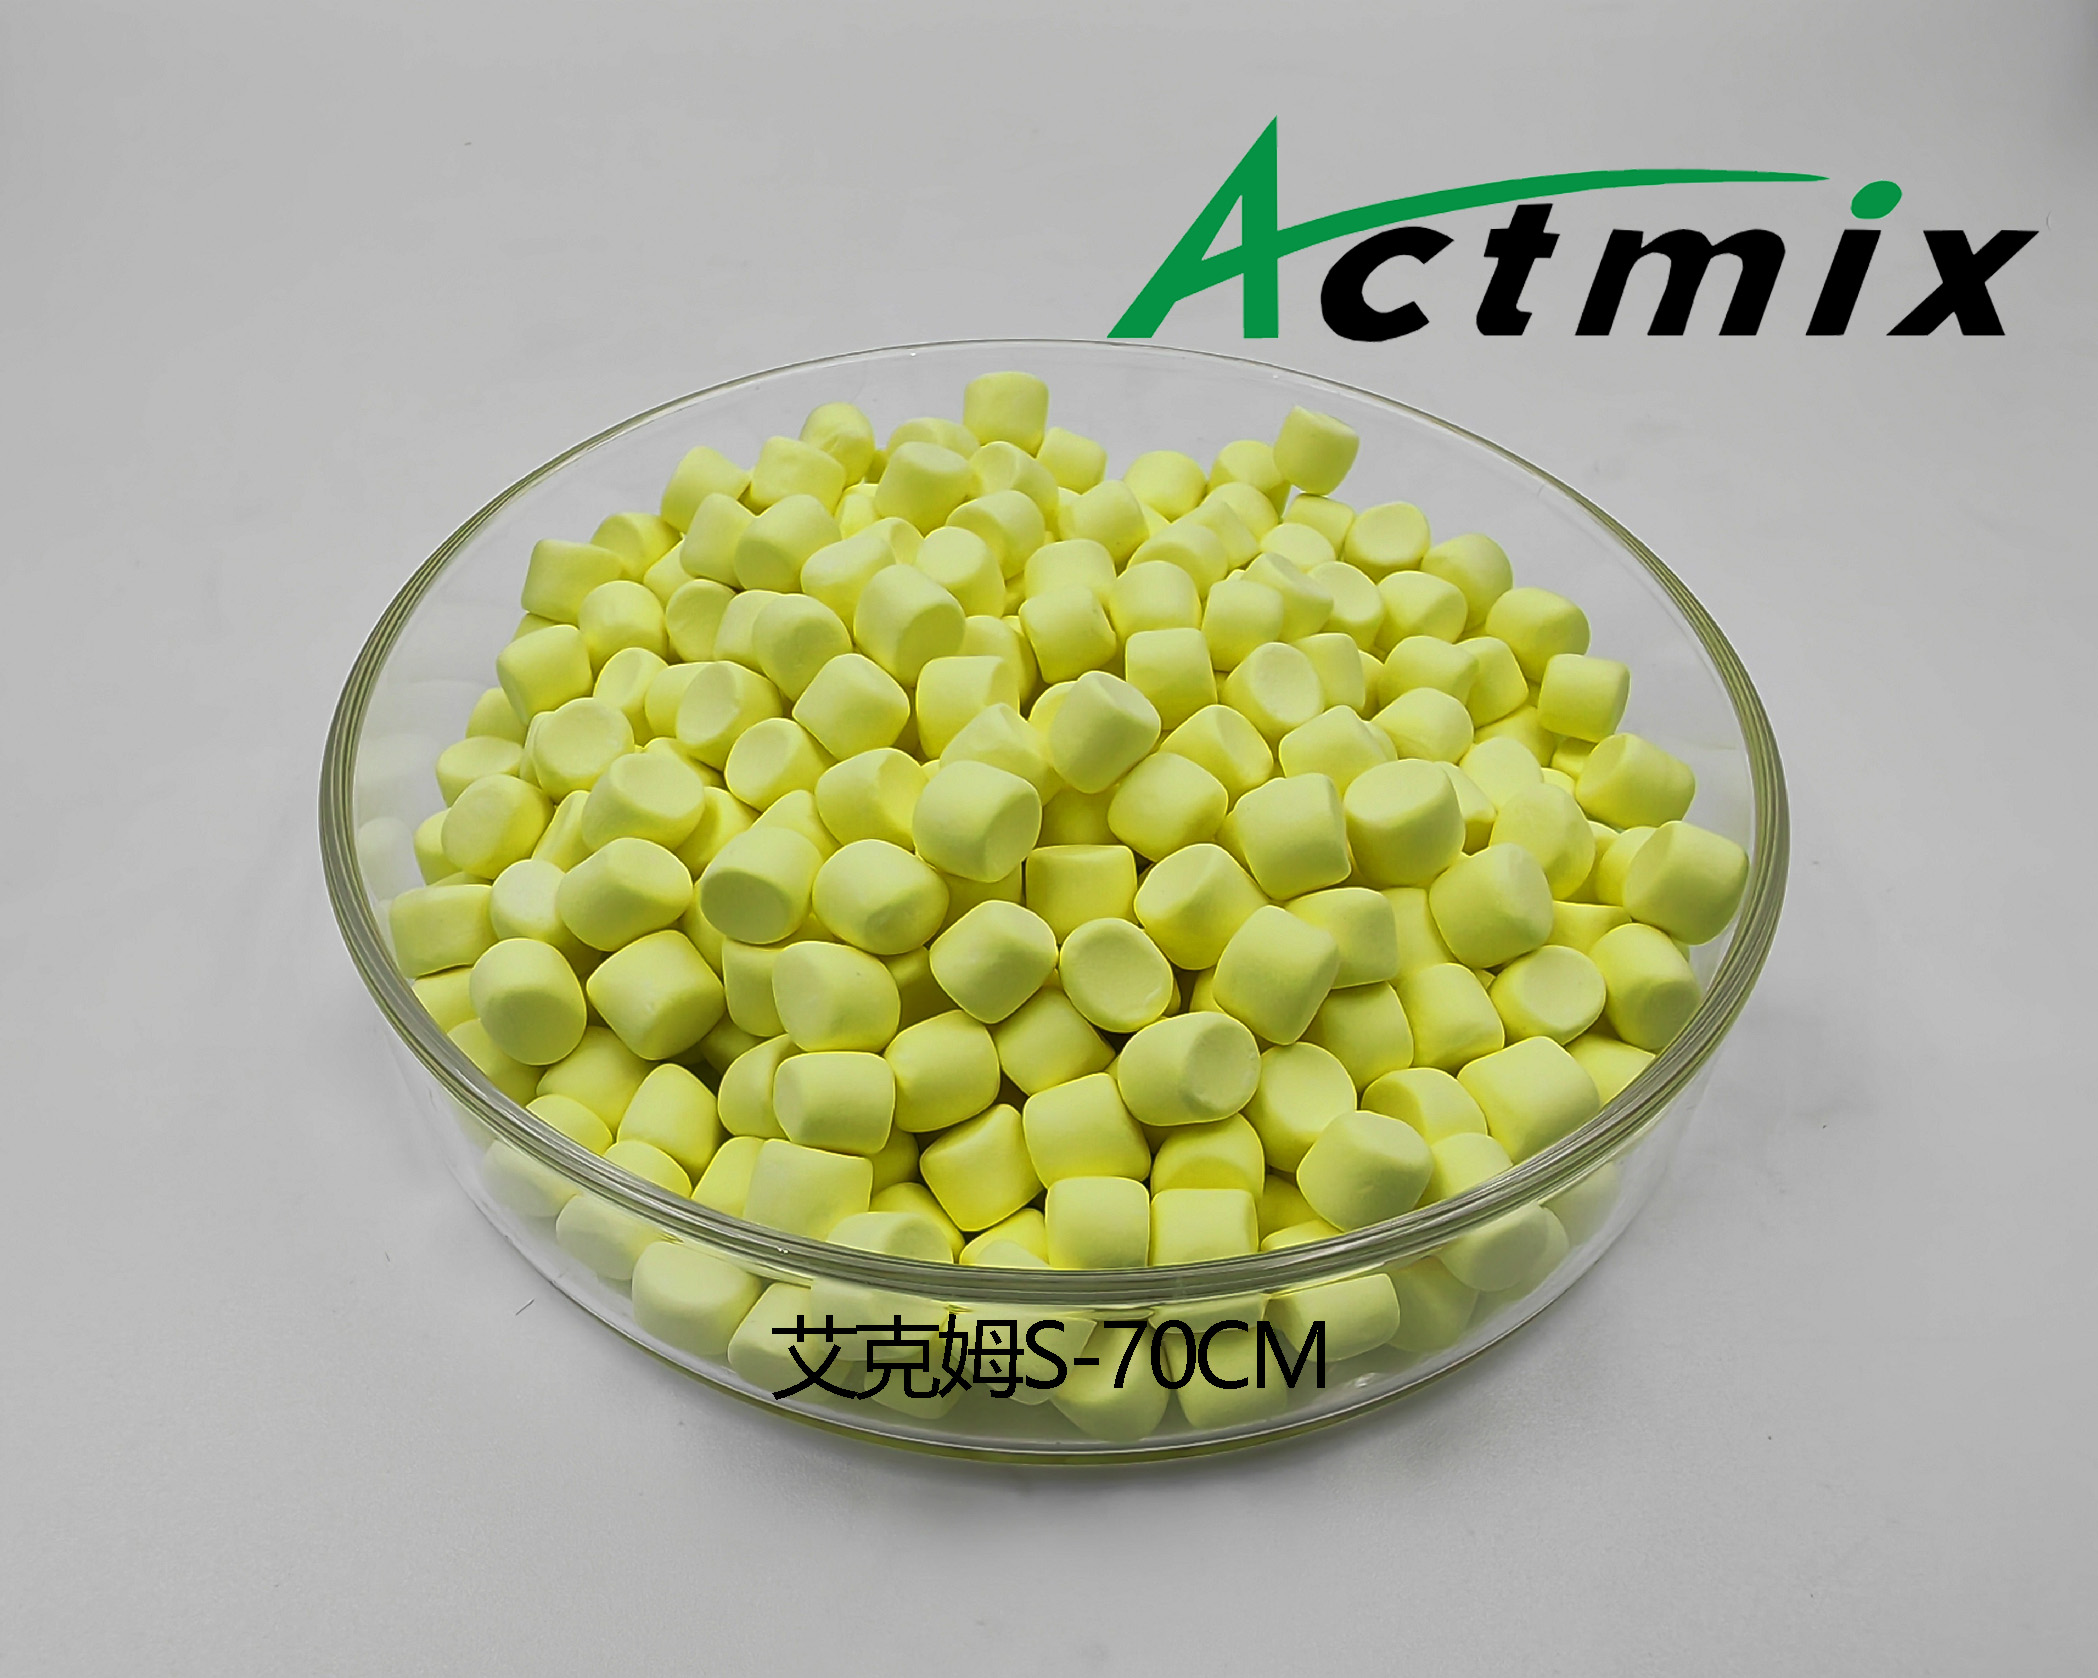 Actmix S-70CM